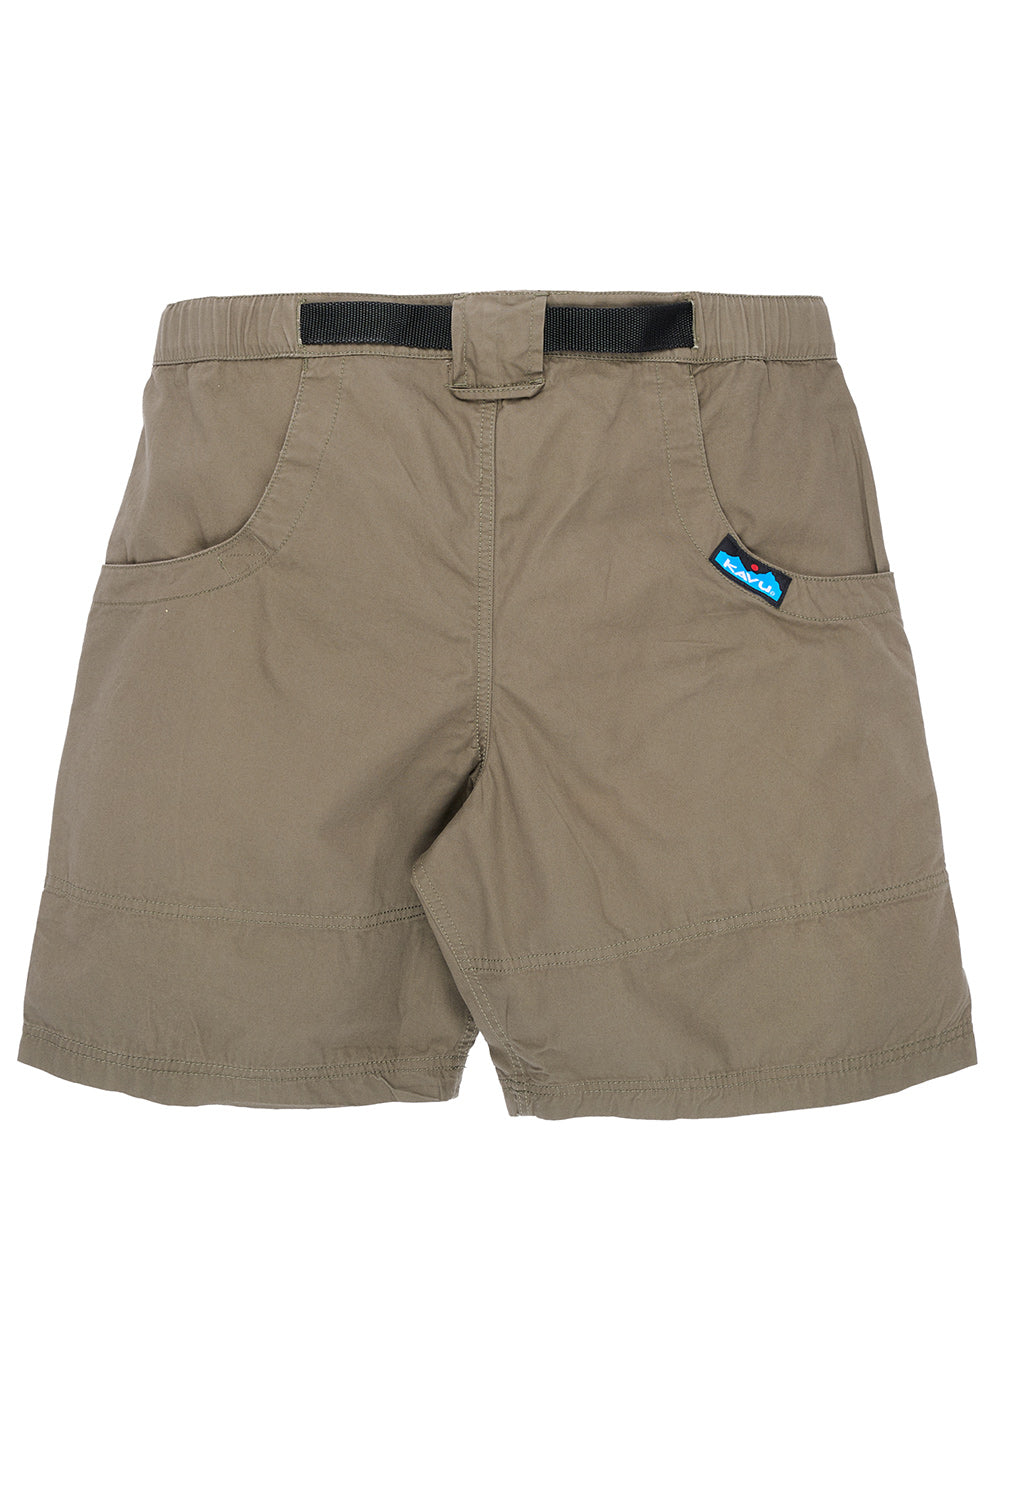 KAVU Men's Chilli Lite Shorts - Leaf